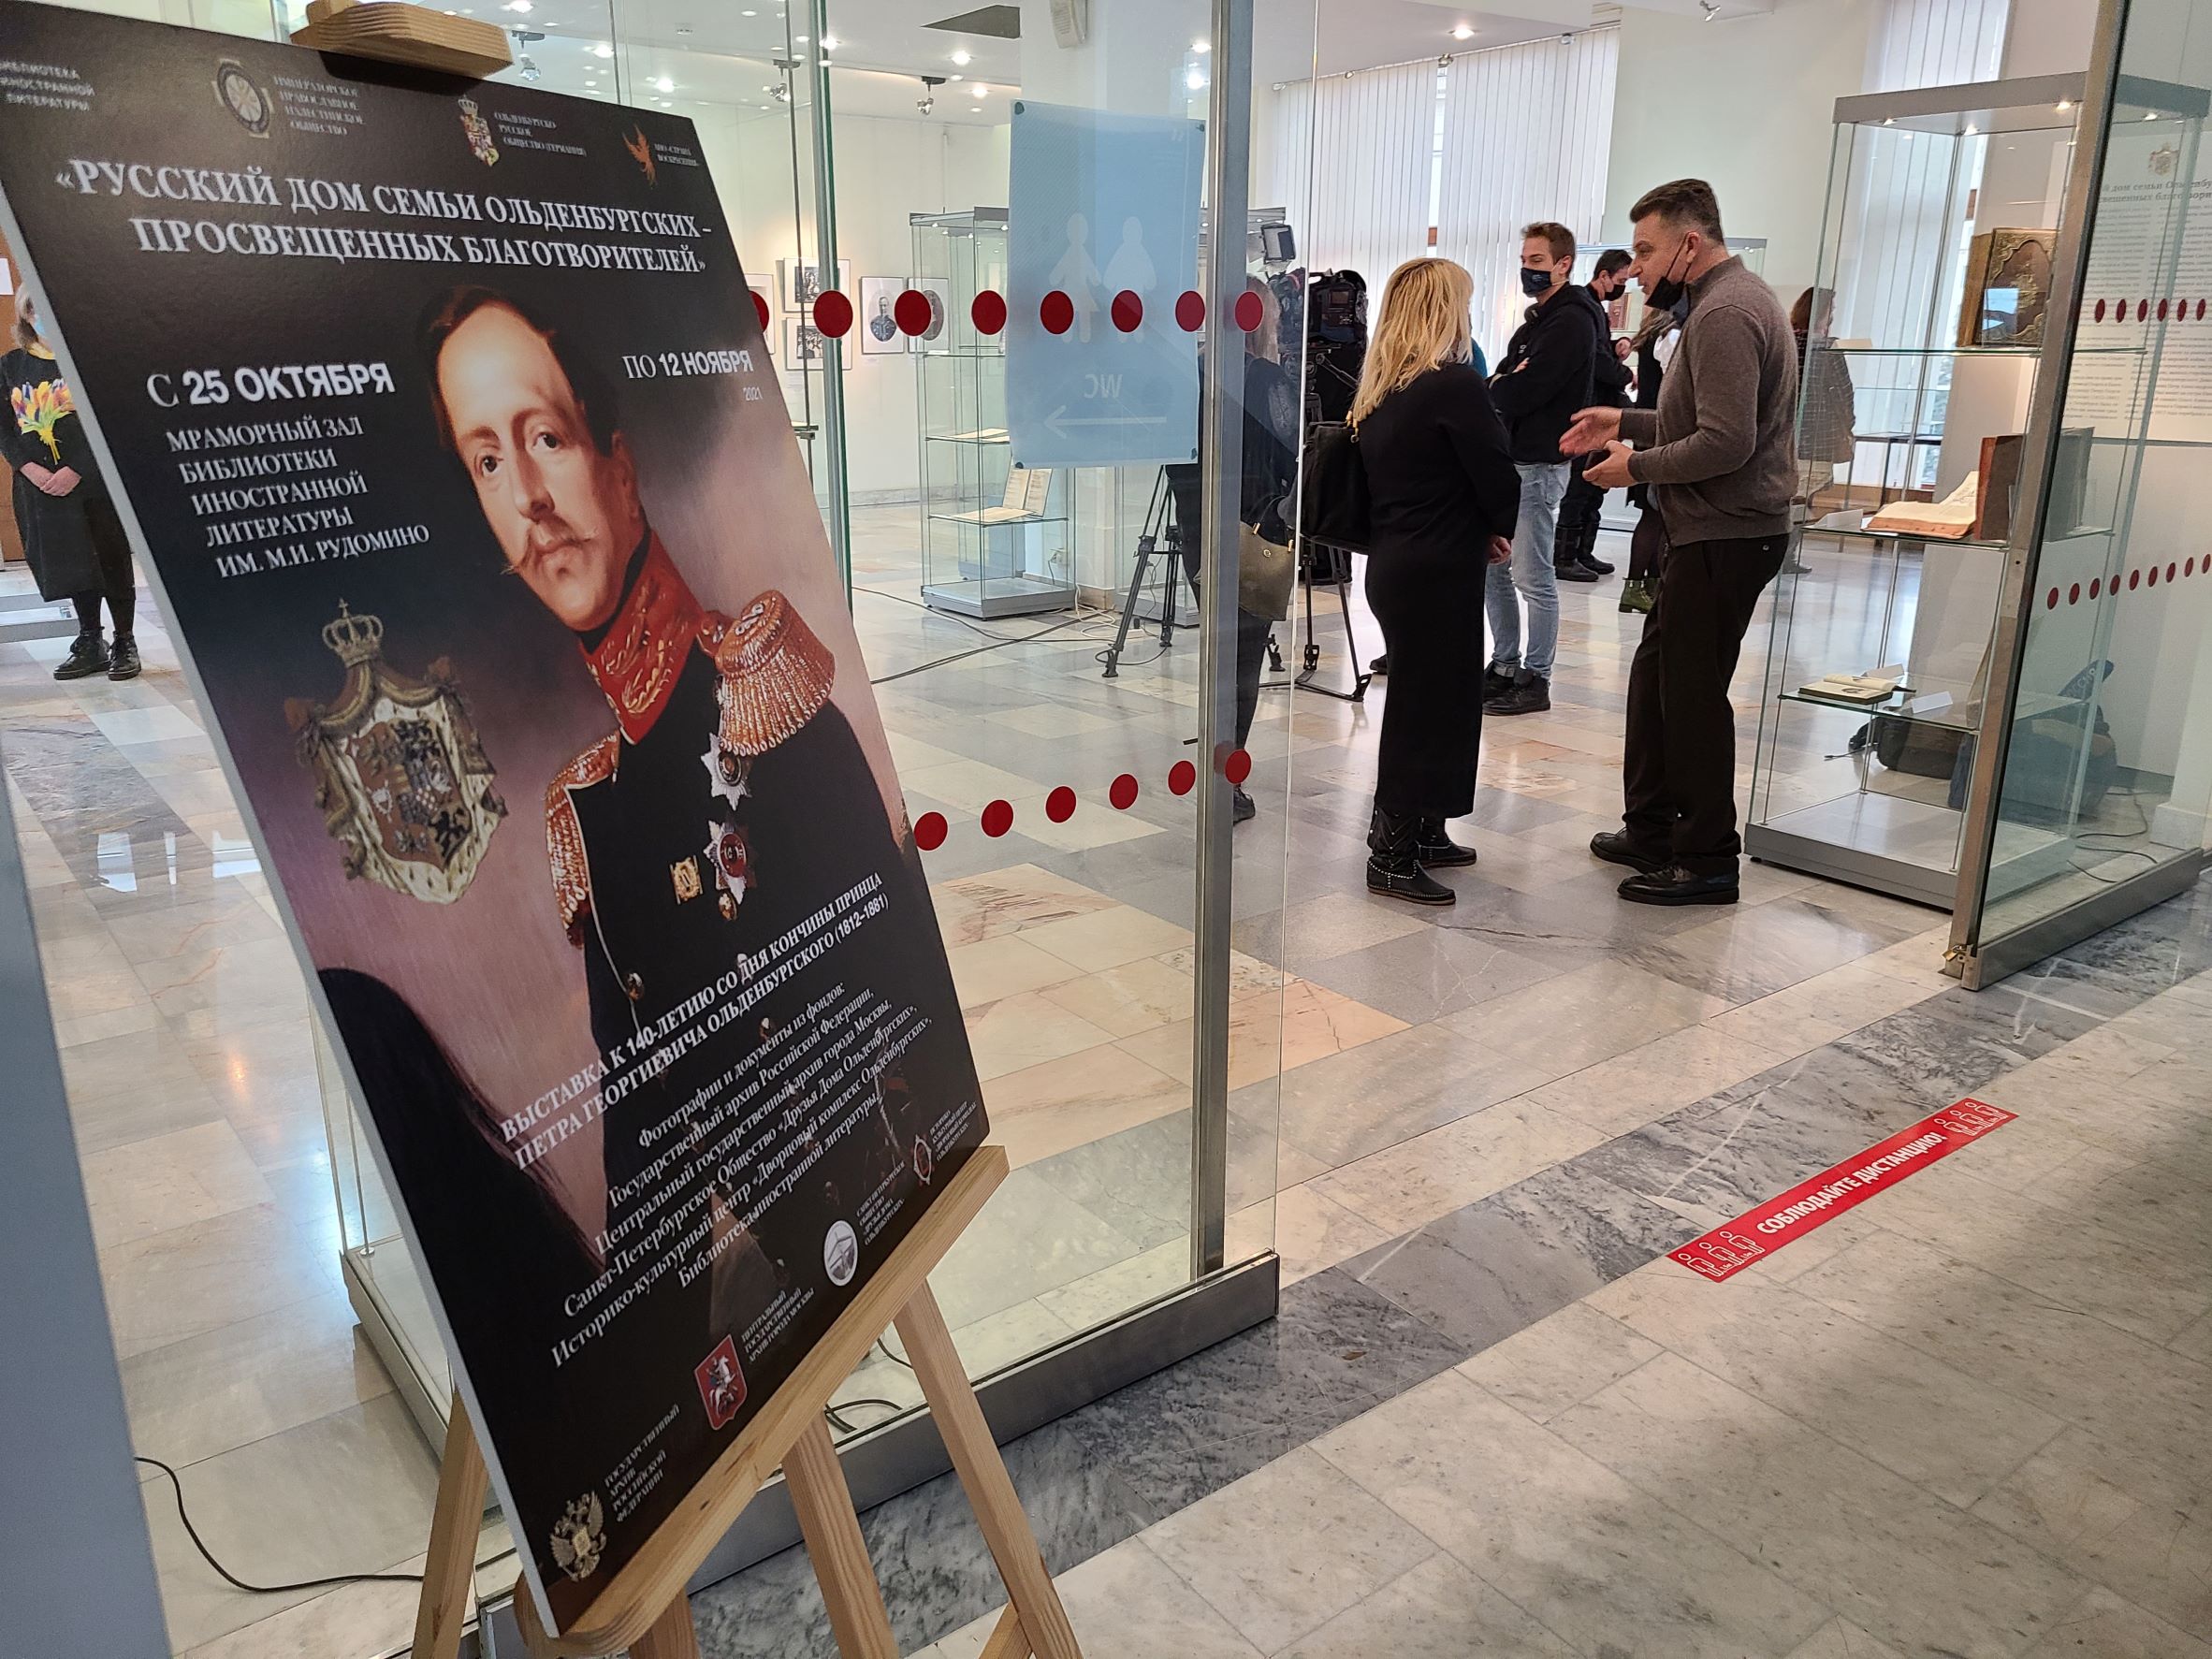 Выставка «Русский дом семьи Ольденбургских» открылась в Москве